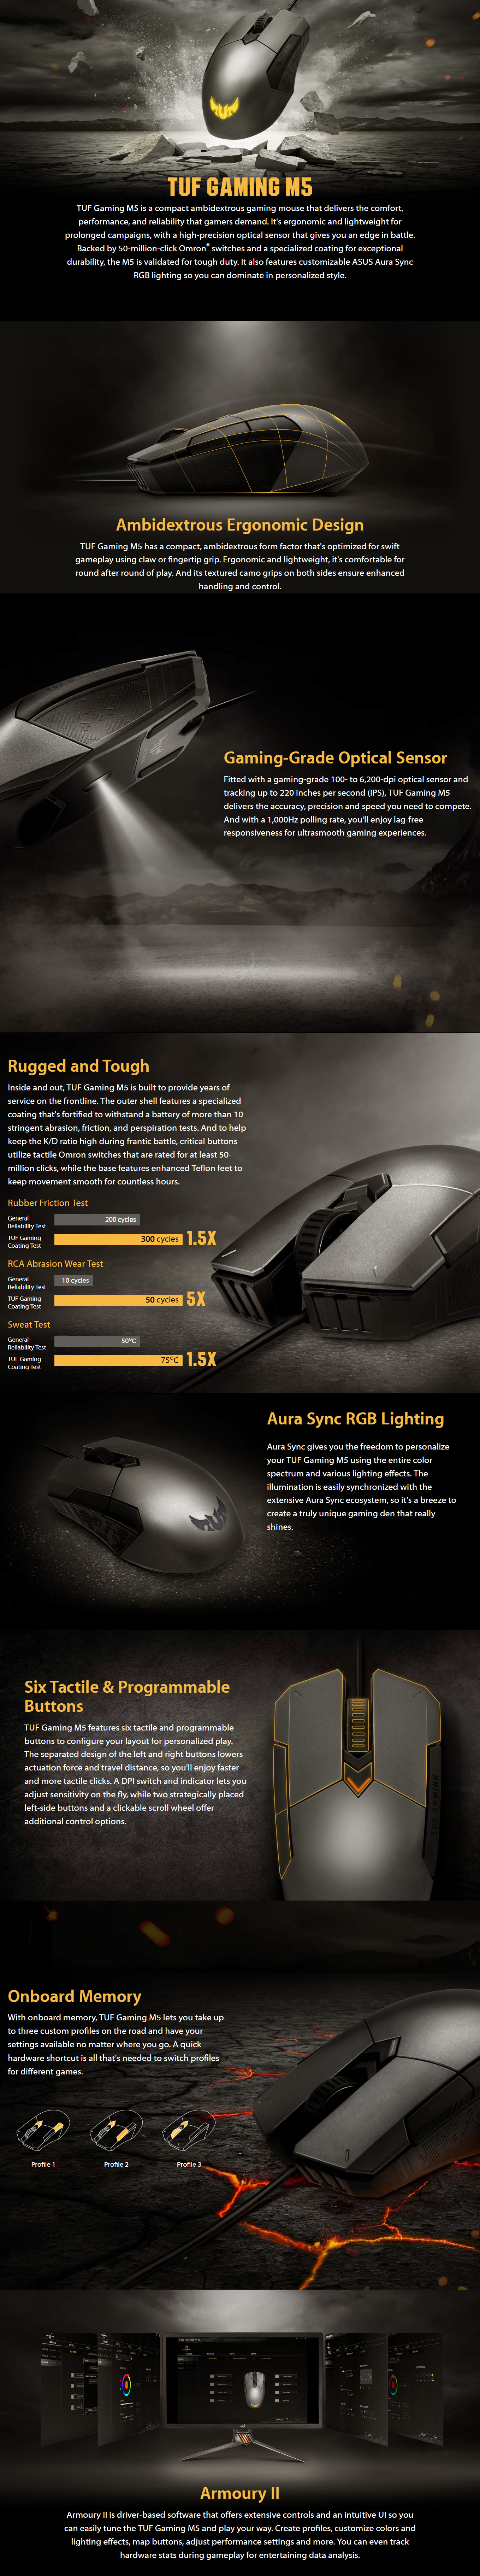 Asus-TUF-Gaming-M5-RGB-Mouse-1